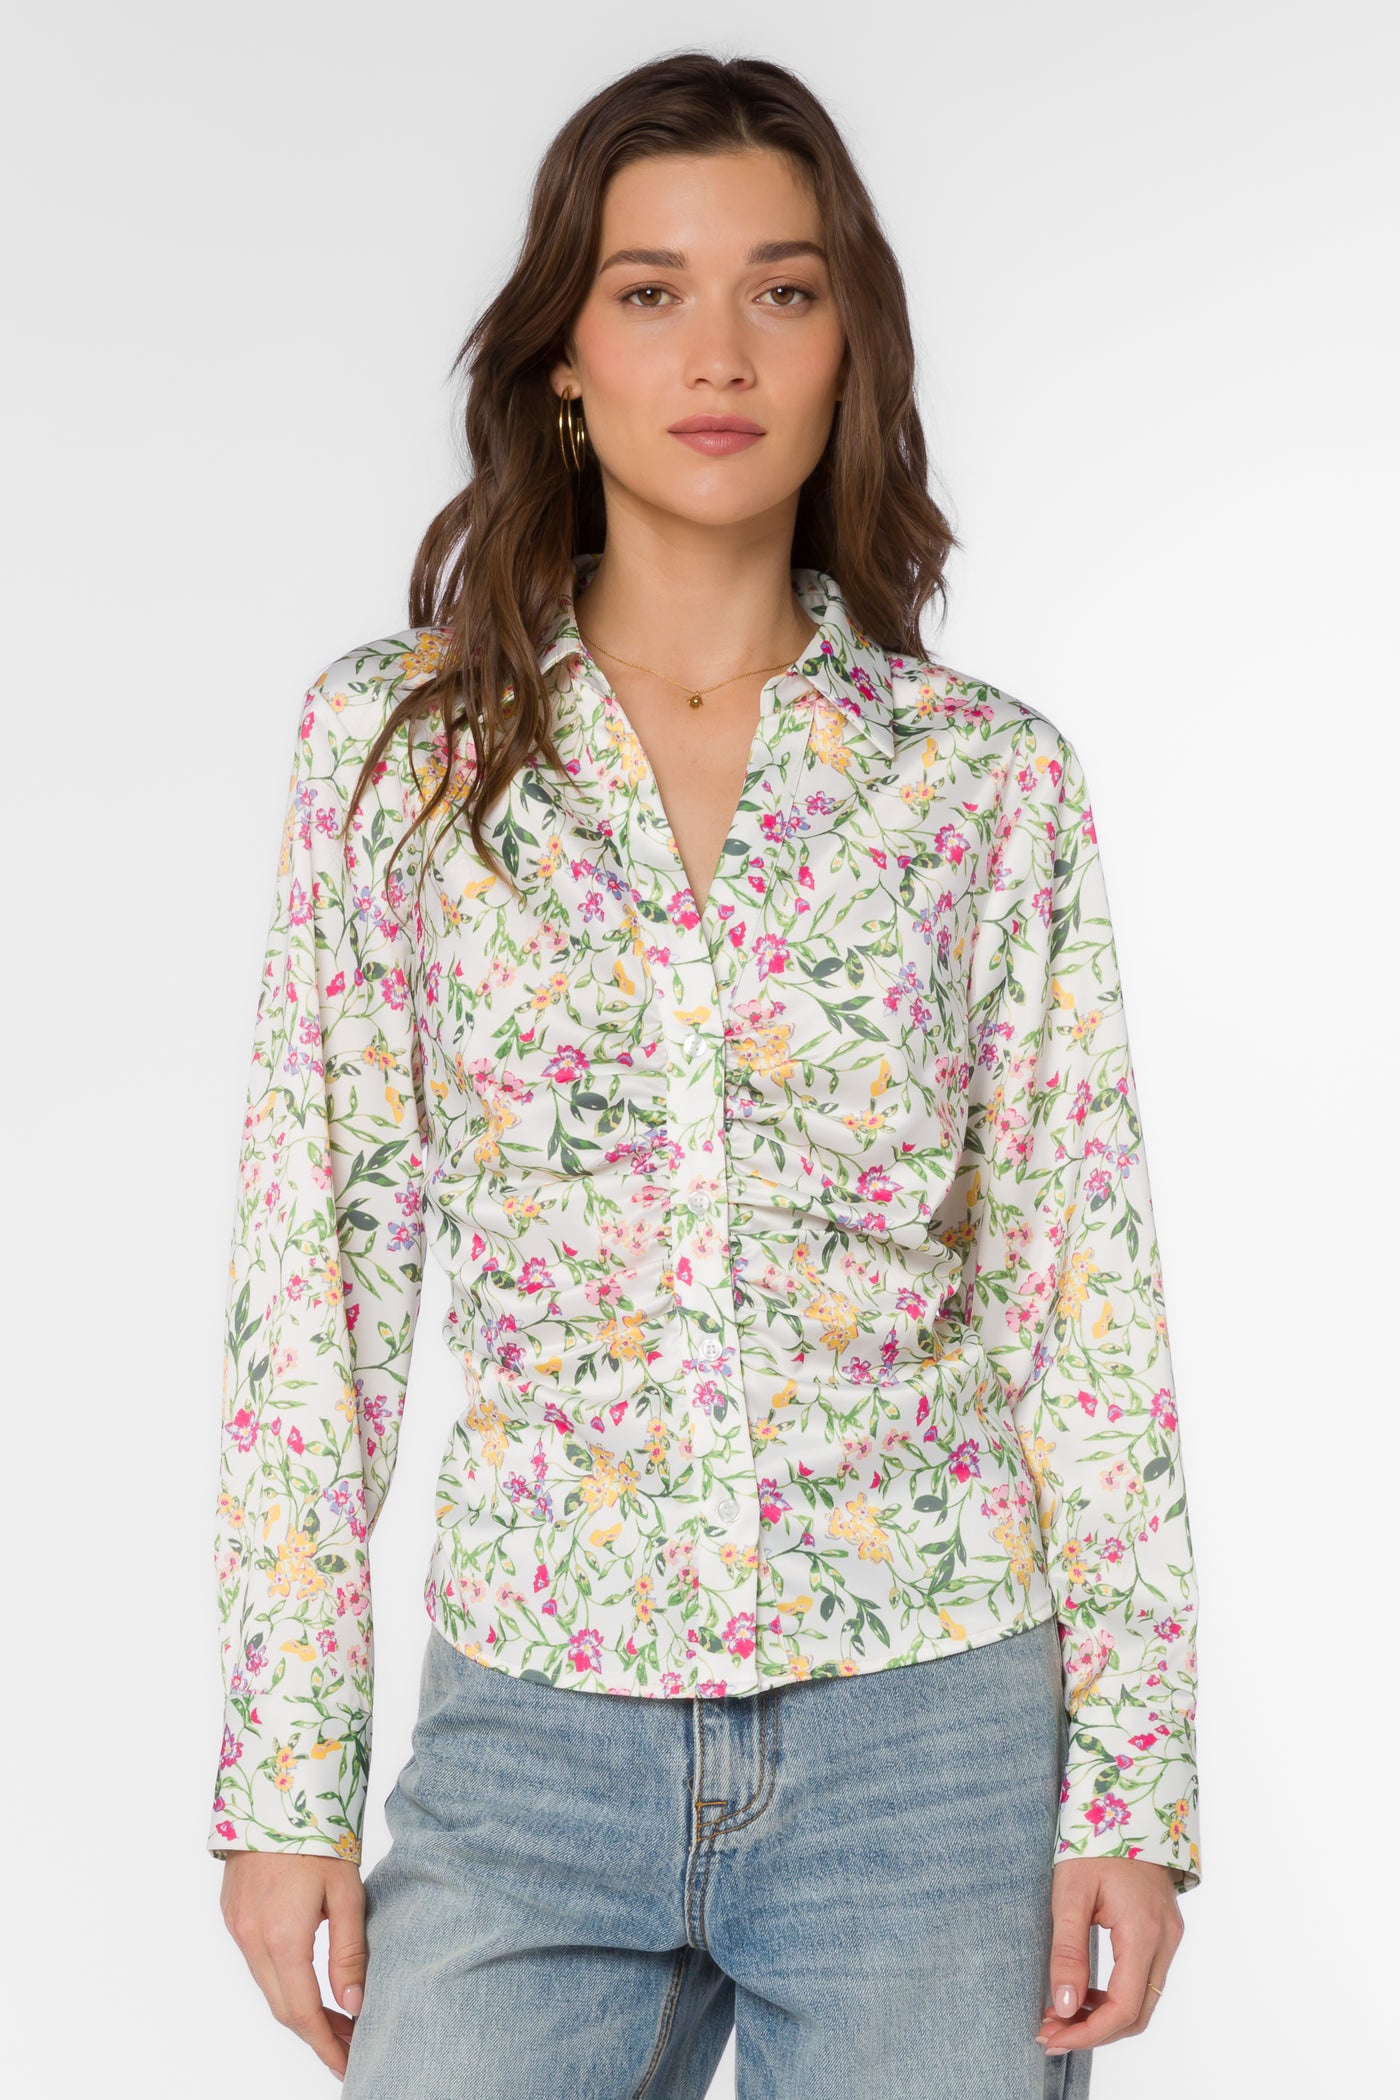 Bessie Spring Ivy Shirt - Tops - Velvet Heart Clothing